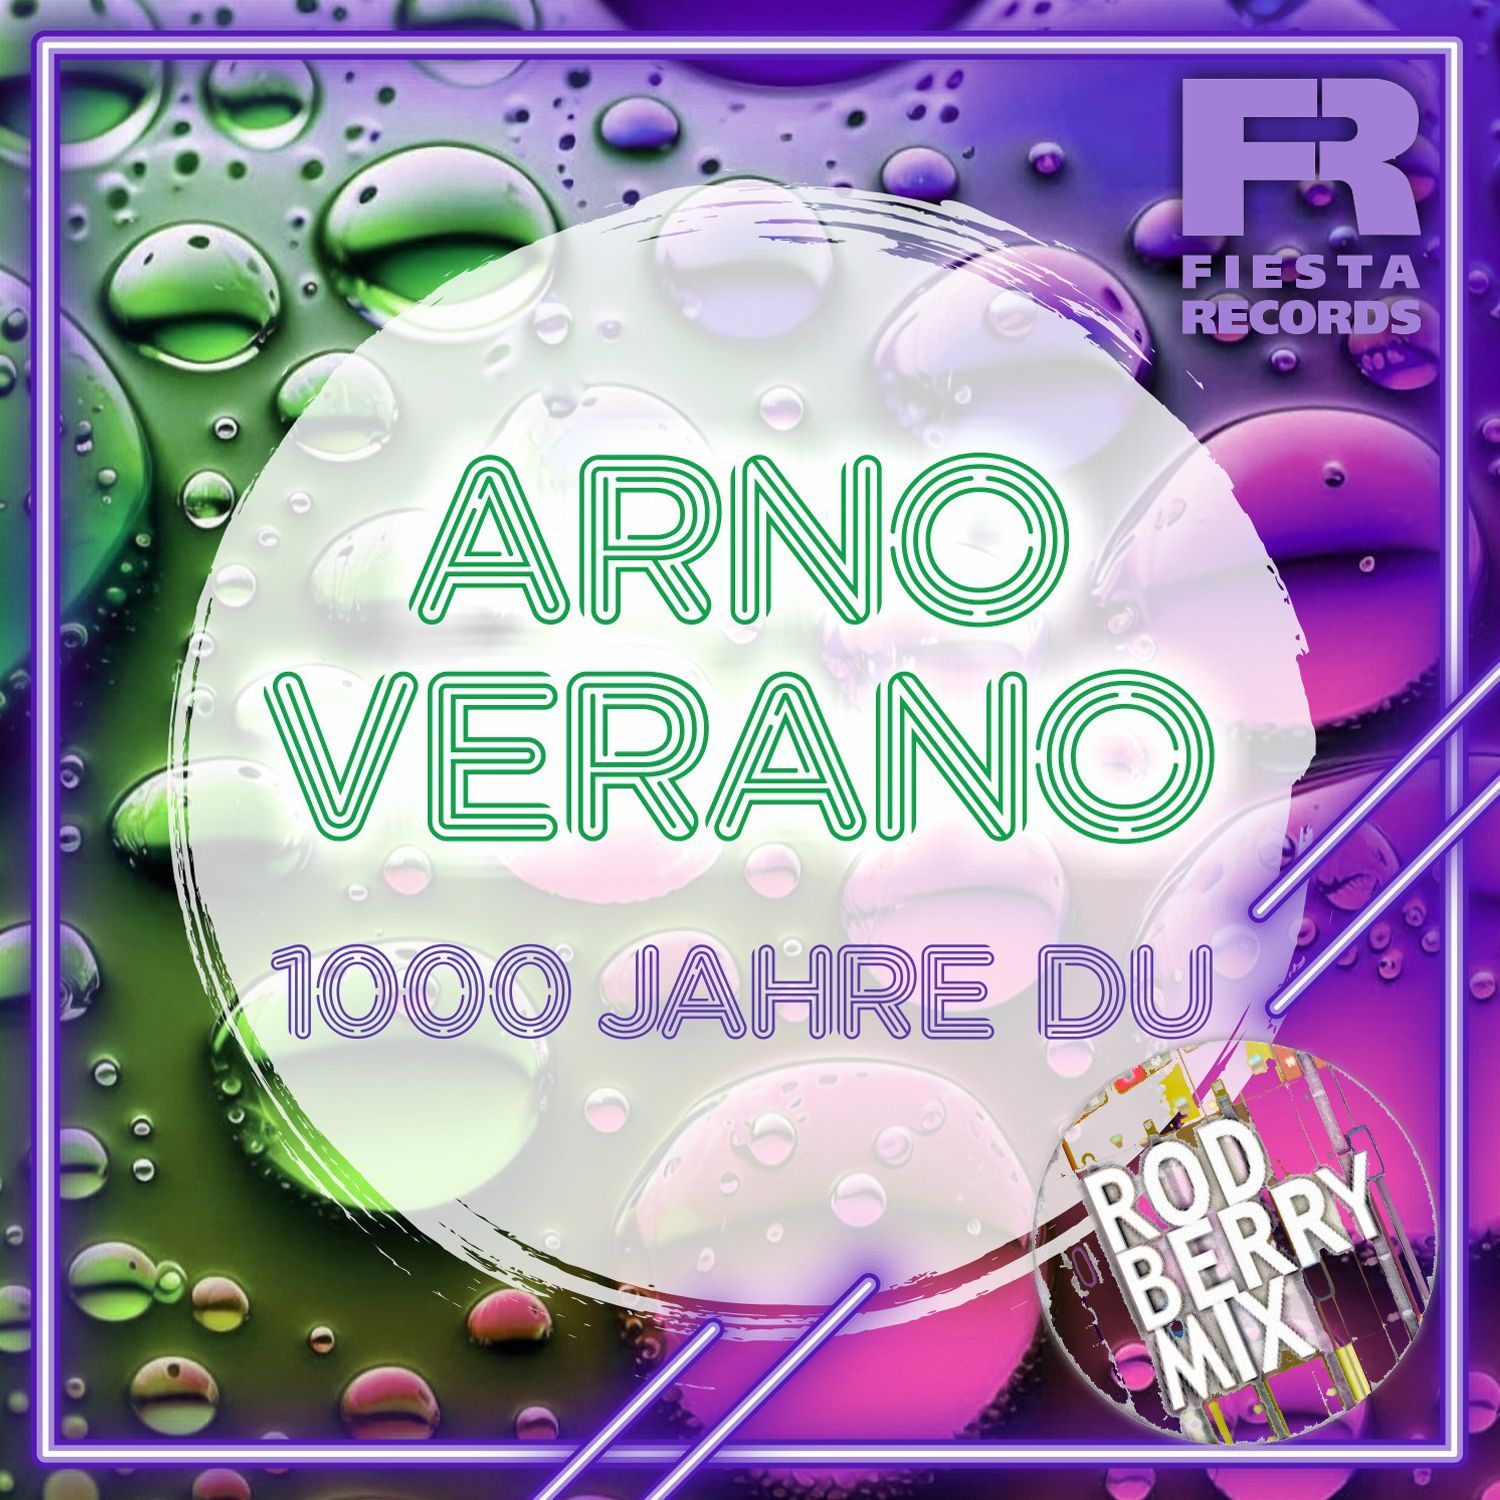 Arno Verano - 1000 Jahr Du (Rod Berry Remix)